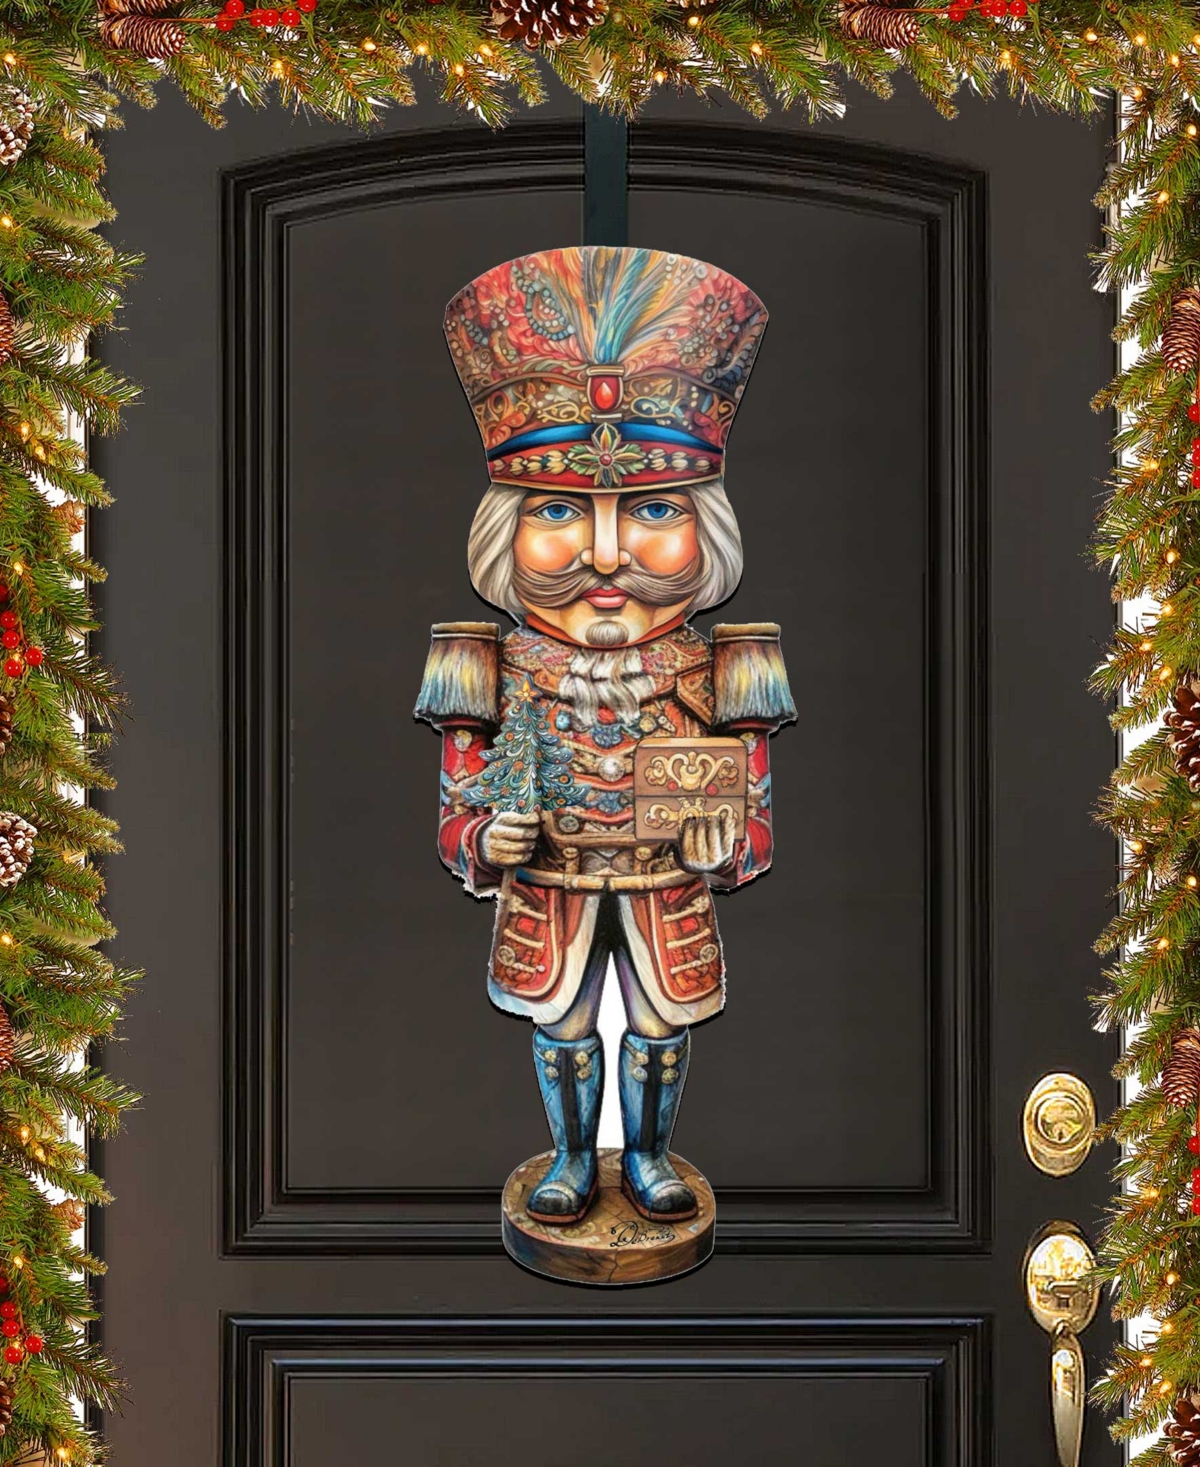 Designocracy Regal Nutcracker Prince Christmas Door Decor Wooden Wall Decor G. Debrekht In Multi Color